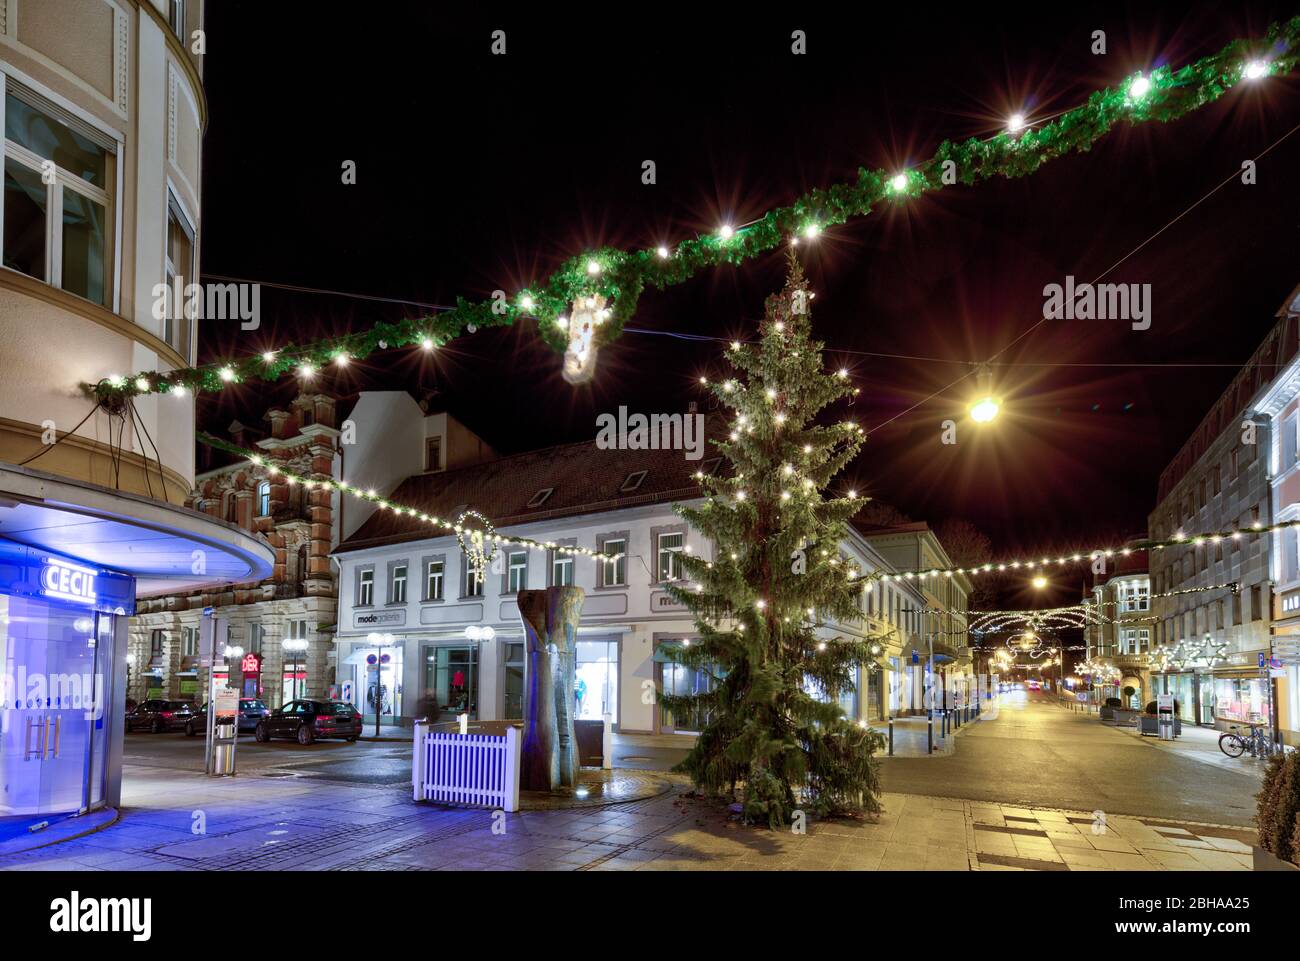 Fußgängerzentrum, Kurstadt, Abend, Weihnachtsdekoration, Bad Kissingen, Franken, Bayern, Deutschland, Stock Photo